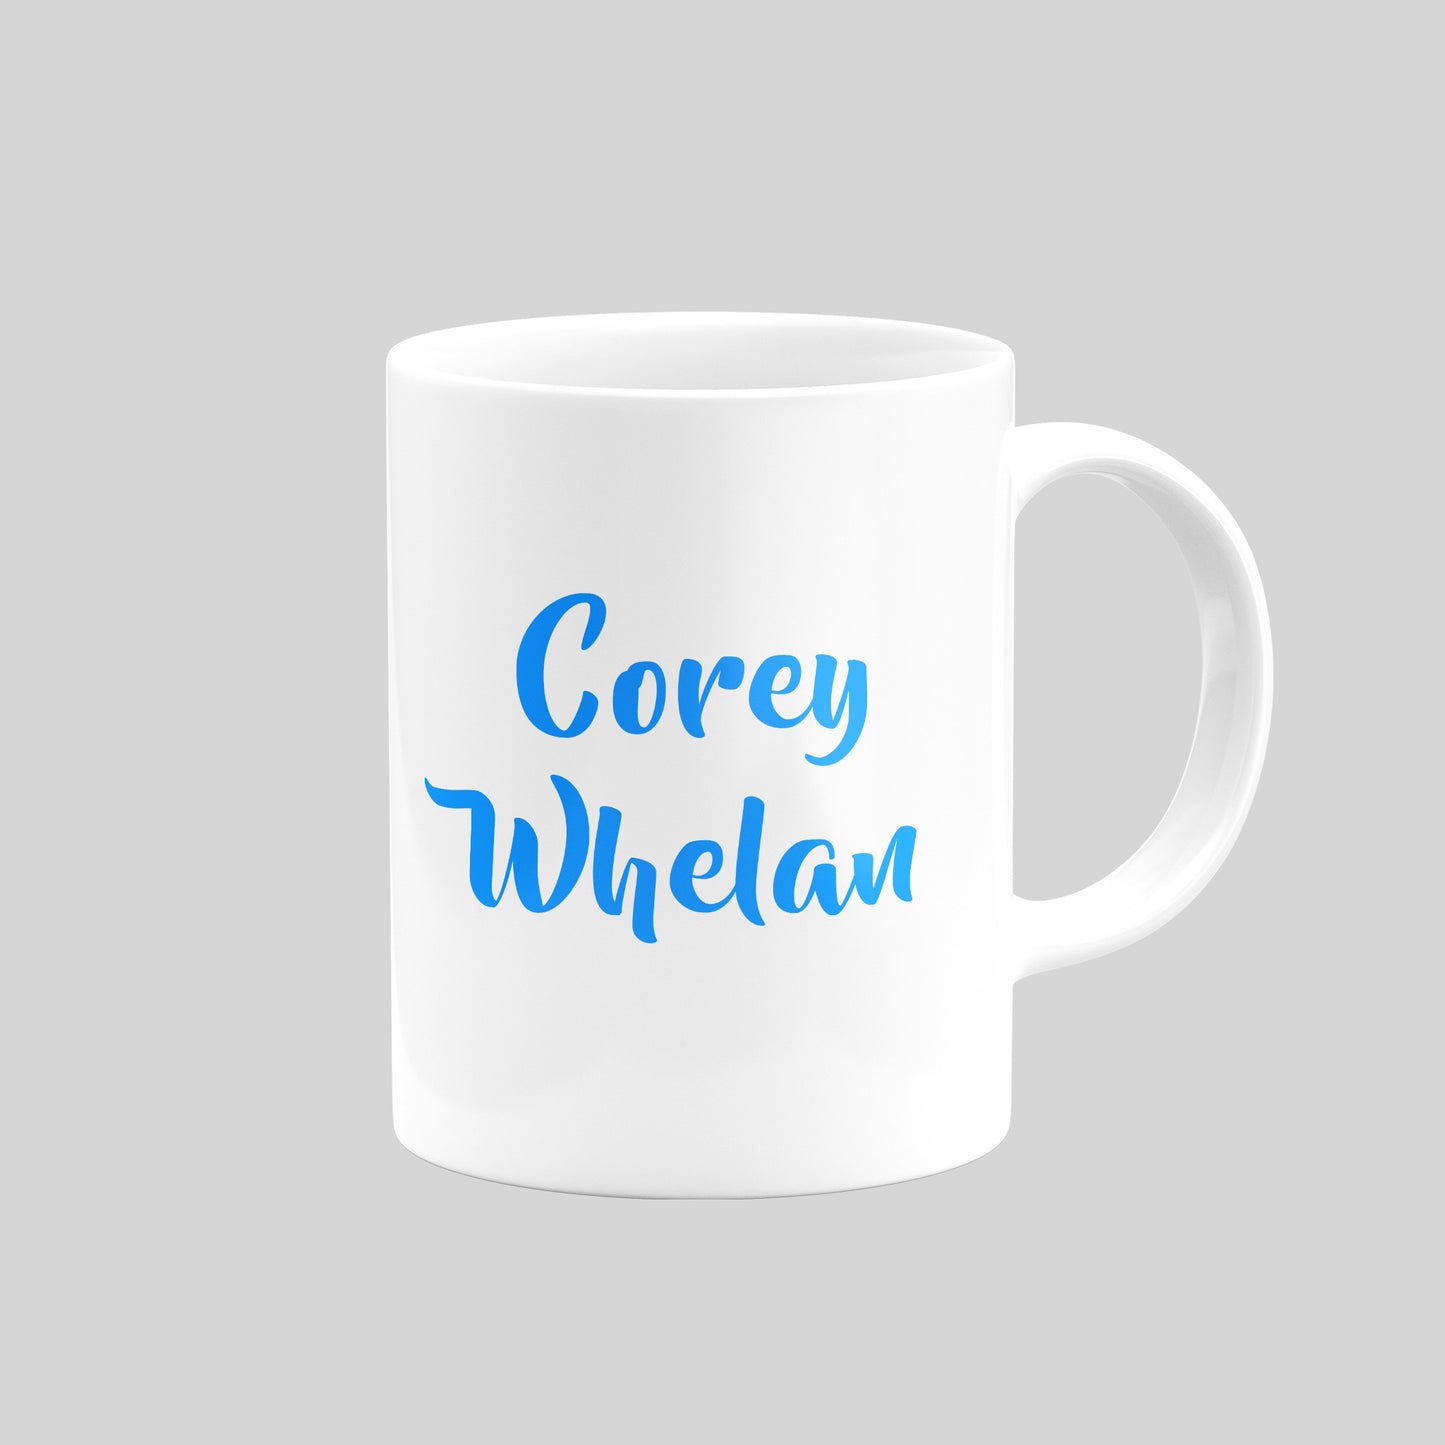 Corey Whelan Mug